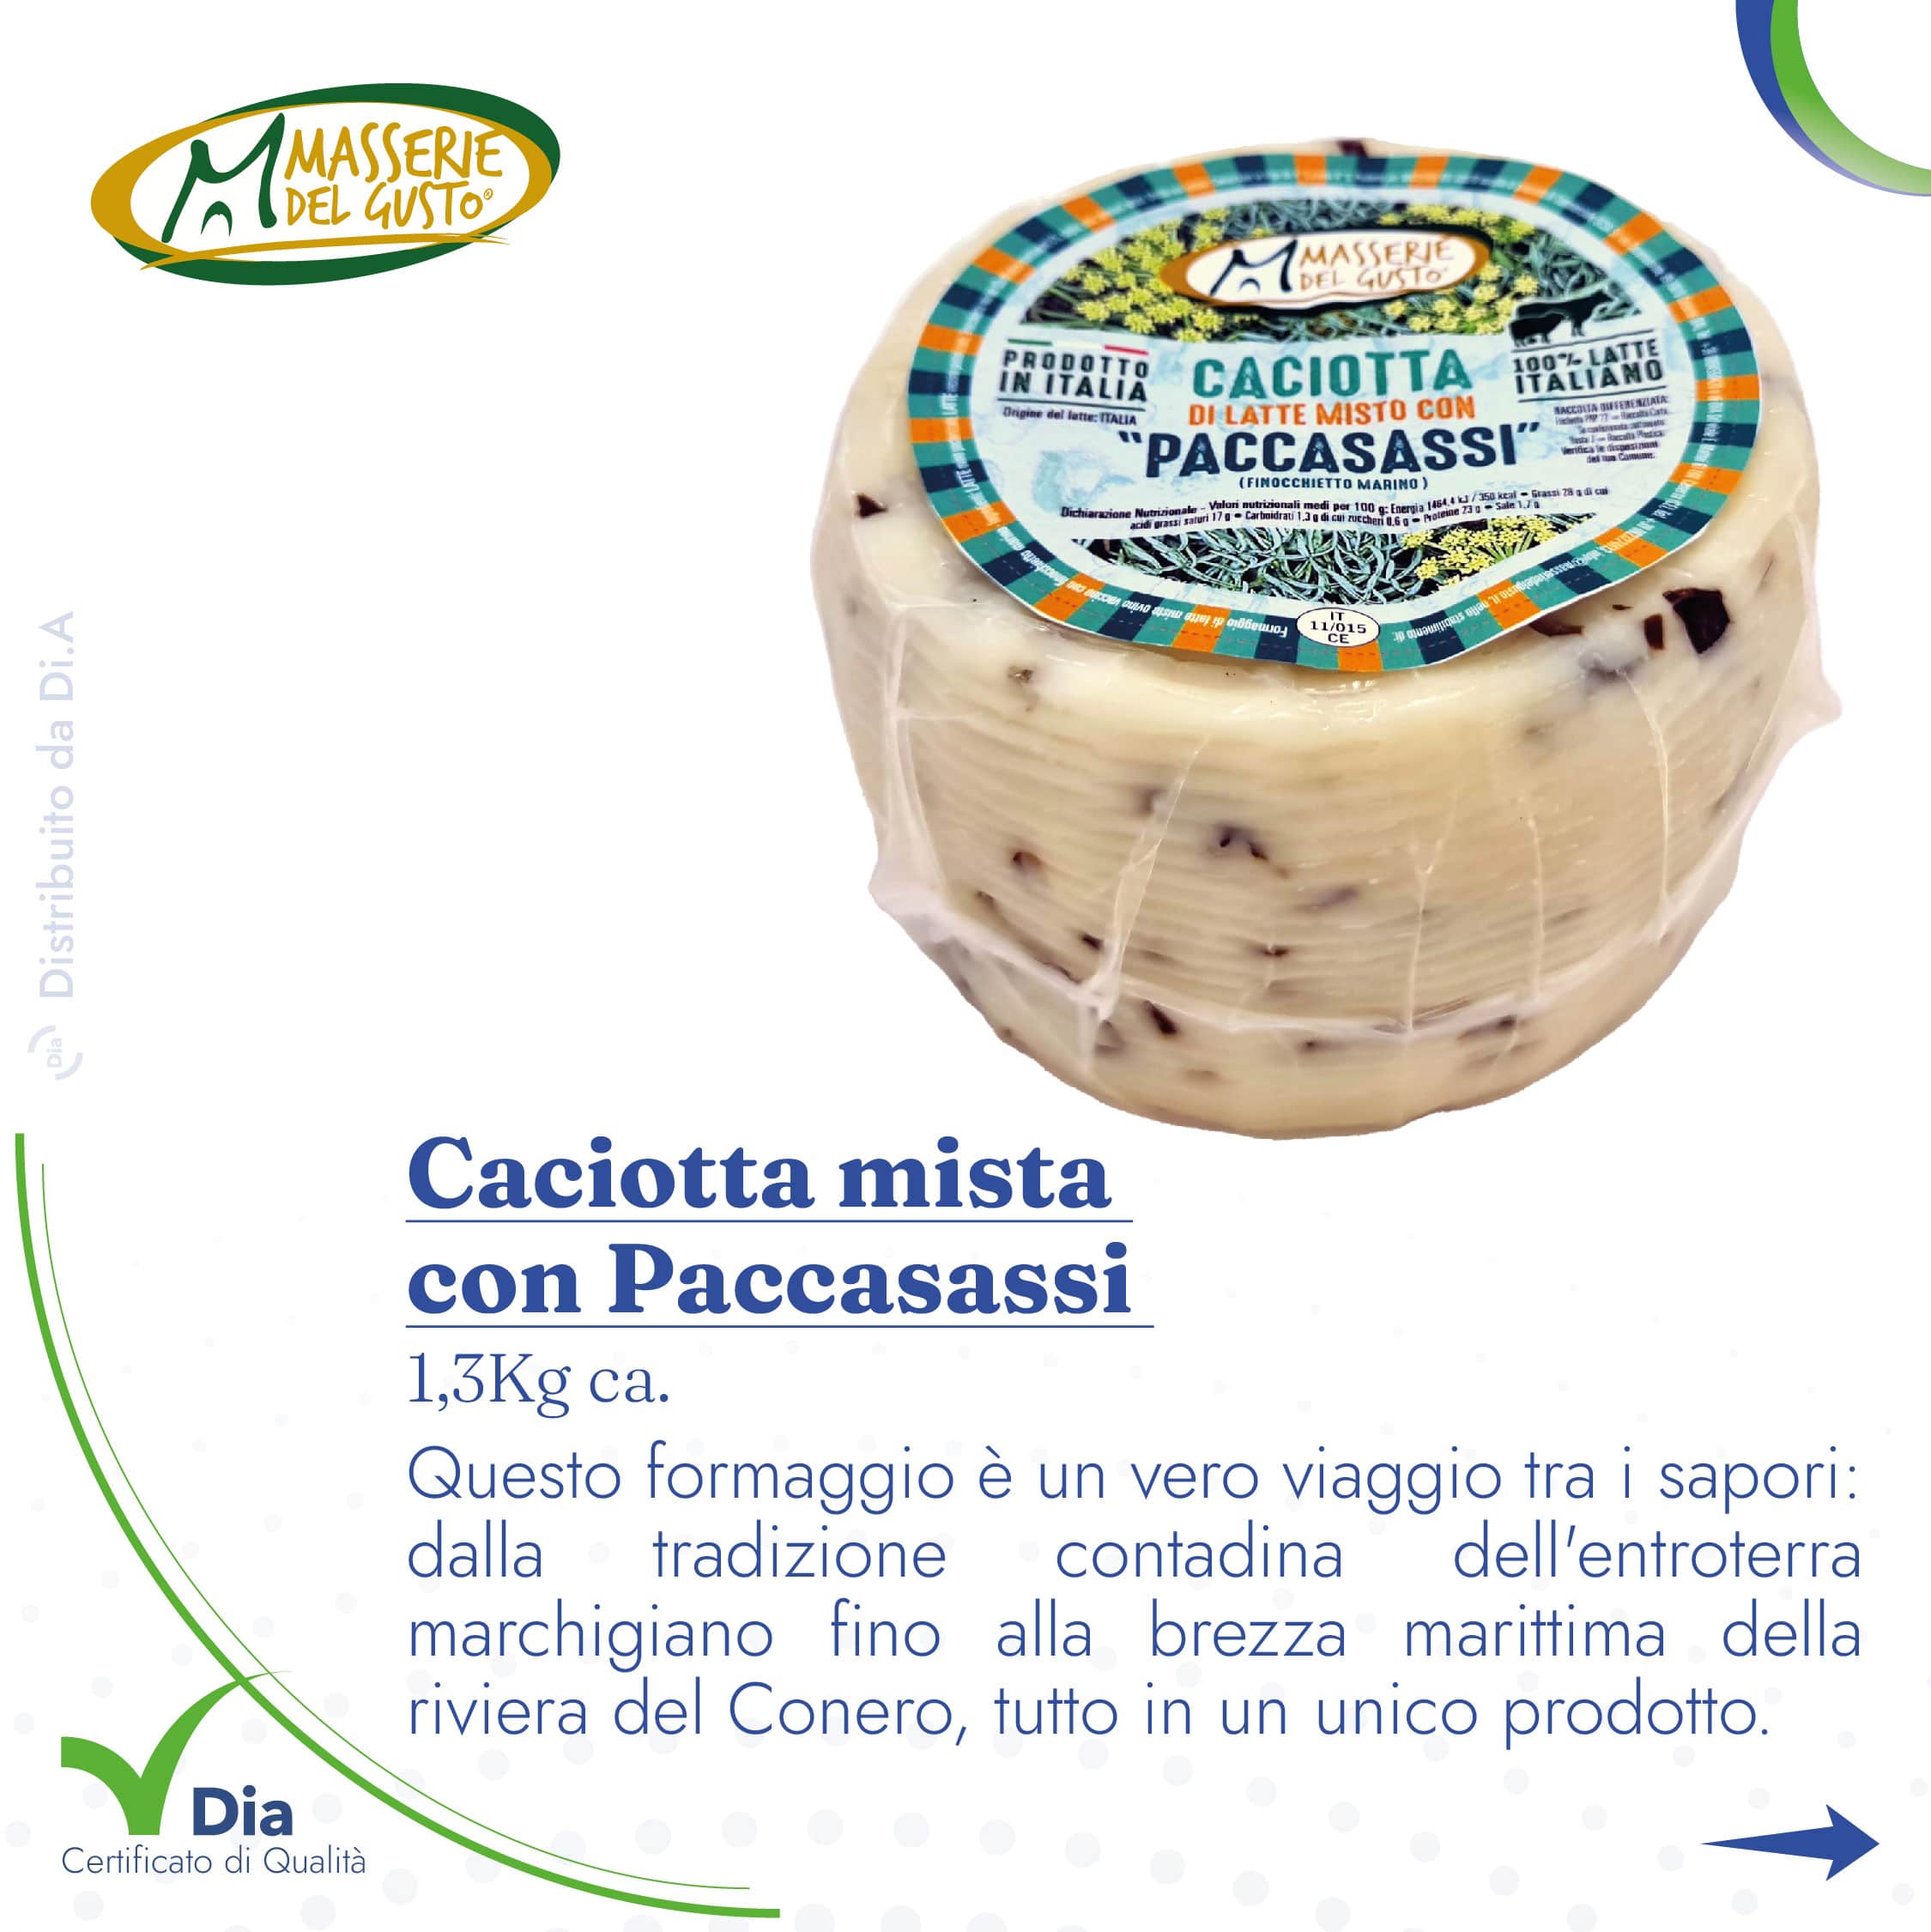 Caciotta mista  con Paccasassi  1,3Kg ca. Questo formaggio è un vero viaggio tra i sapori: dalla tradizione contadina dell'entroterra marchigiano fino alla brezza marittima della riviera del Conero, tutto in un unico prodotto.